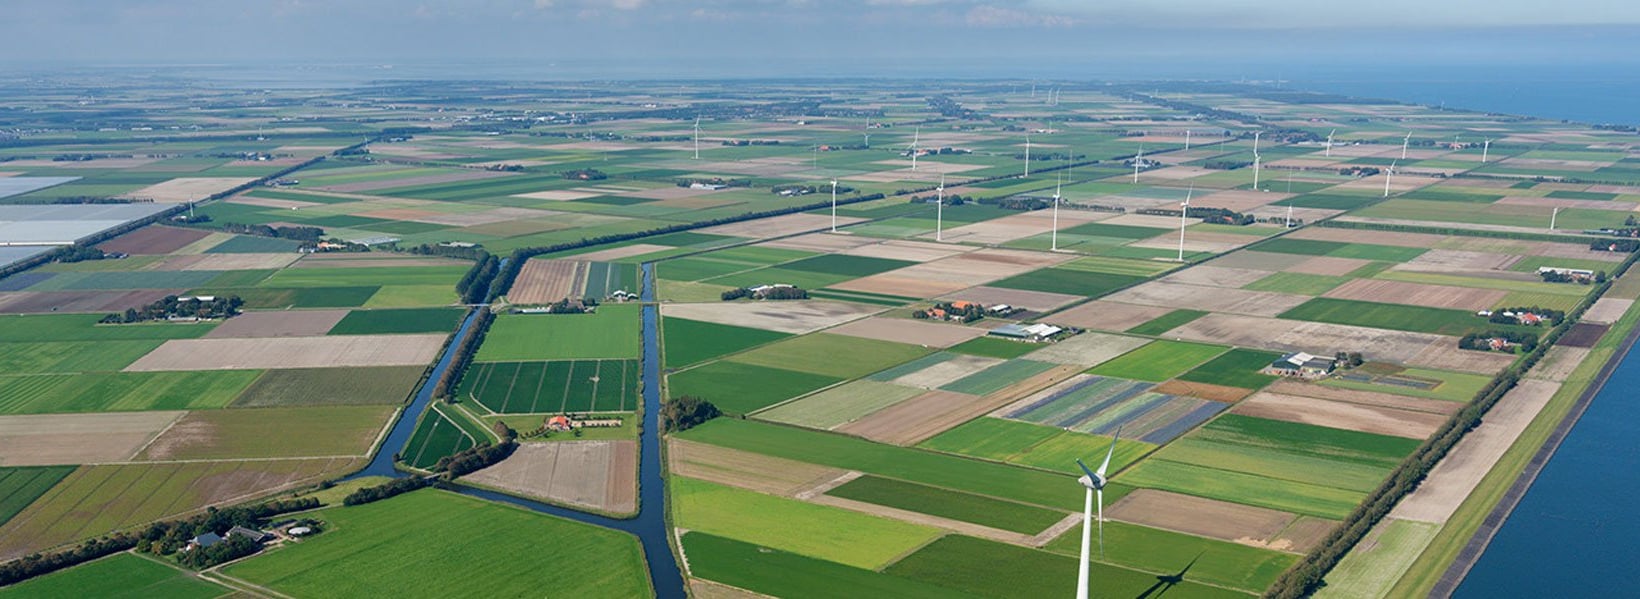 Wieringermeer wind park, outside Amsterdam, Netherlands